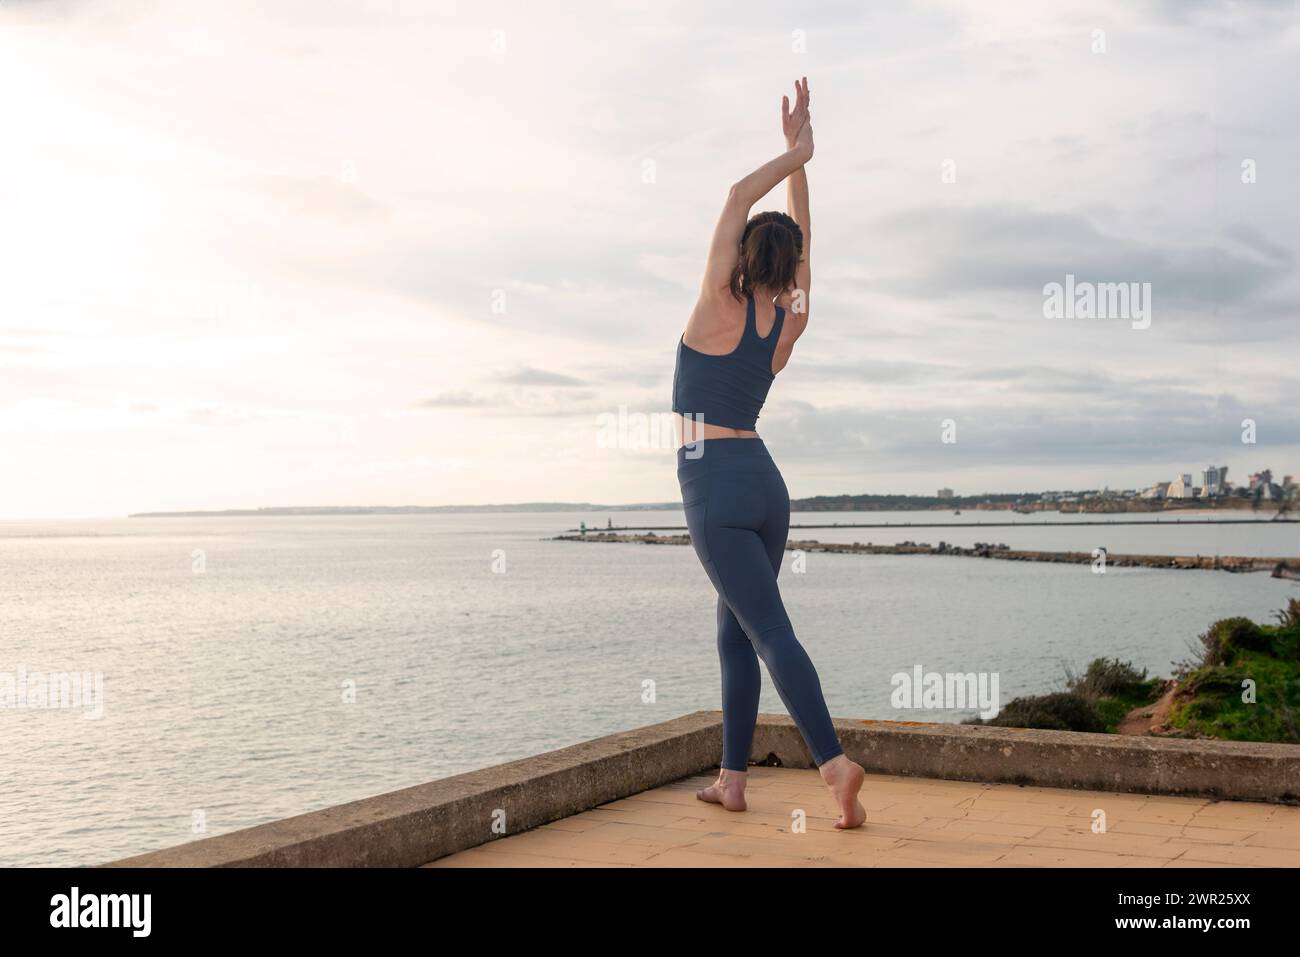 Vue arrière d'une femme qui s'étire et danse au bord de l'océan Banque D'Images